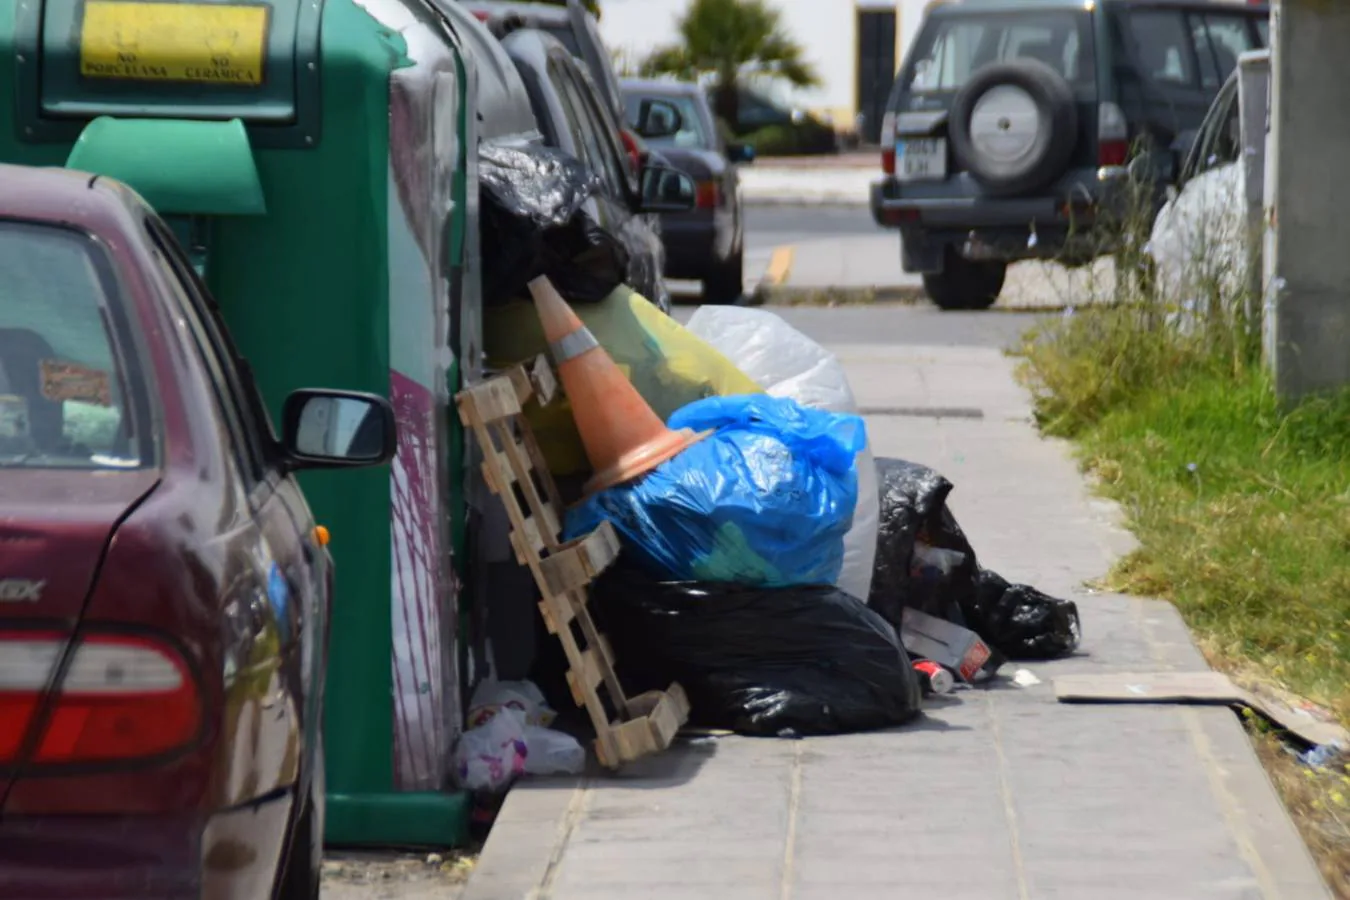 FOTOS: Lamentable estado de la calles de El Puerto repletas de basura